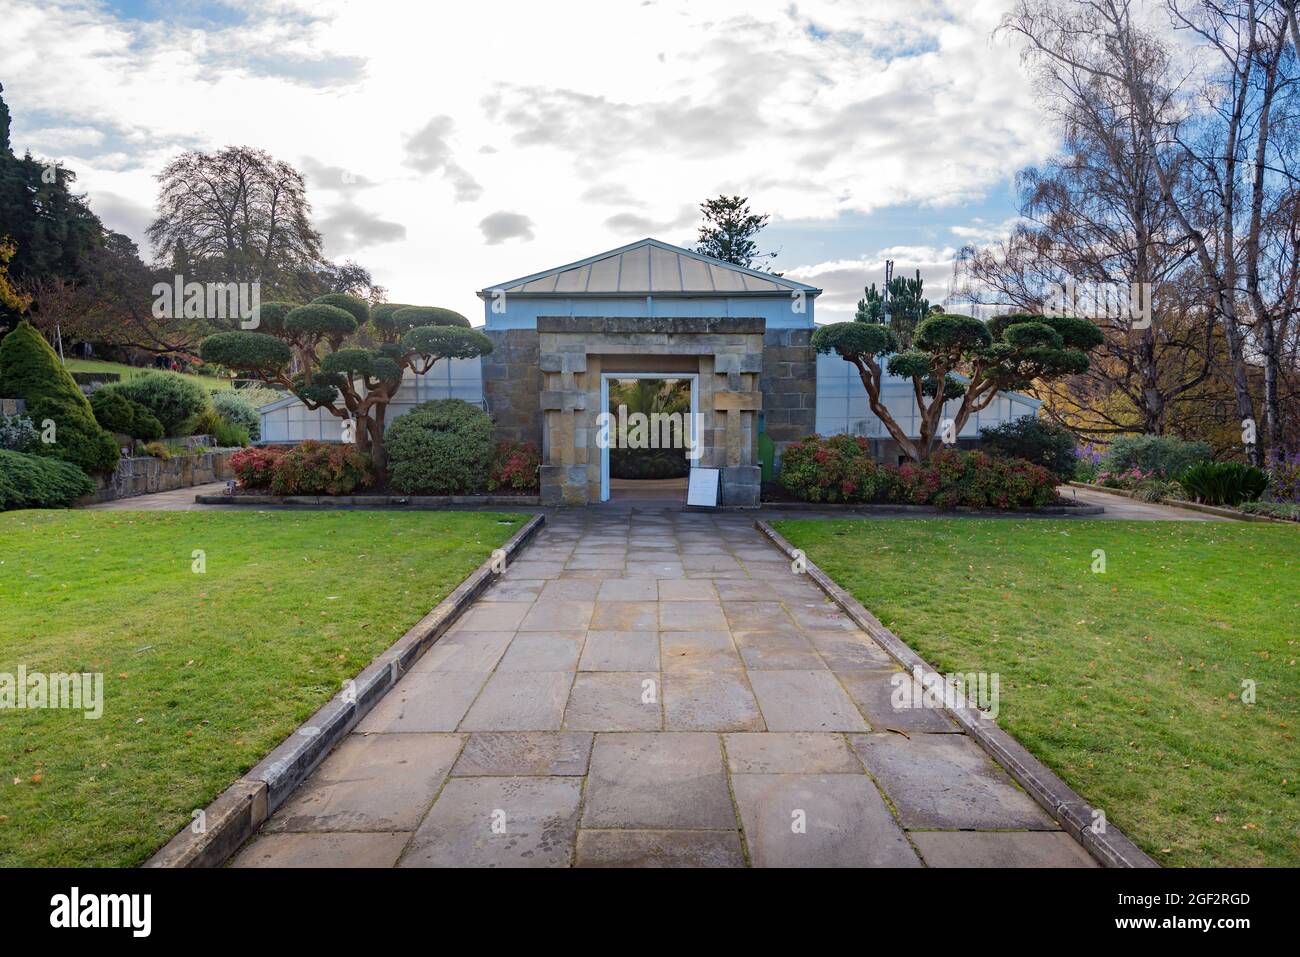 L'extérieur du Conservatoire construit en 1939 dans les jardins botaniques royaux de Tasmanie, situé dans le domaine Queens, Hobart, Tasmanie, Australie Banque D'Images